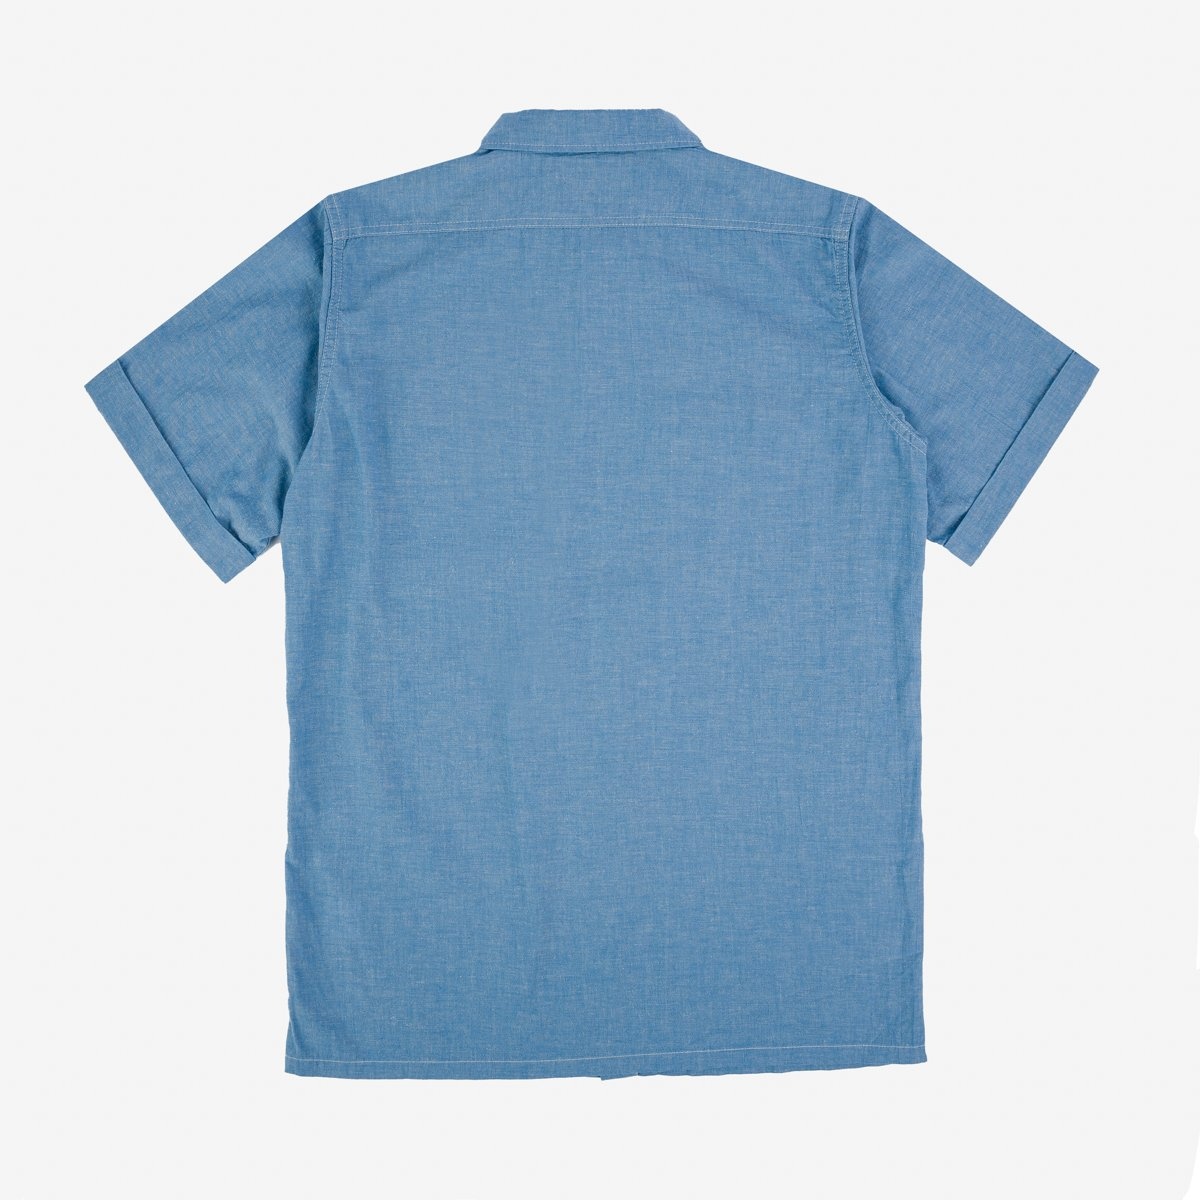 IHSH-388-BLU 4oz Selvedge Short Sleeved Summer Shirt - Blue - 5